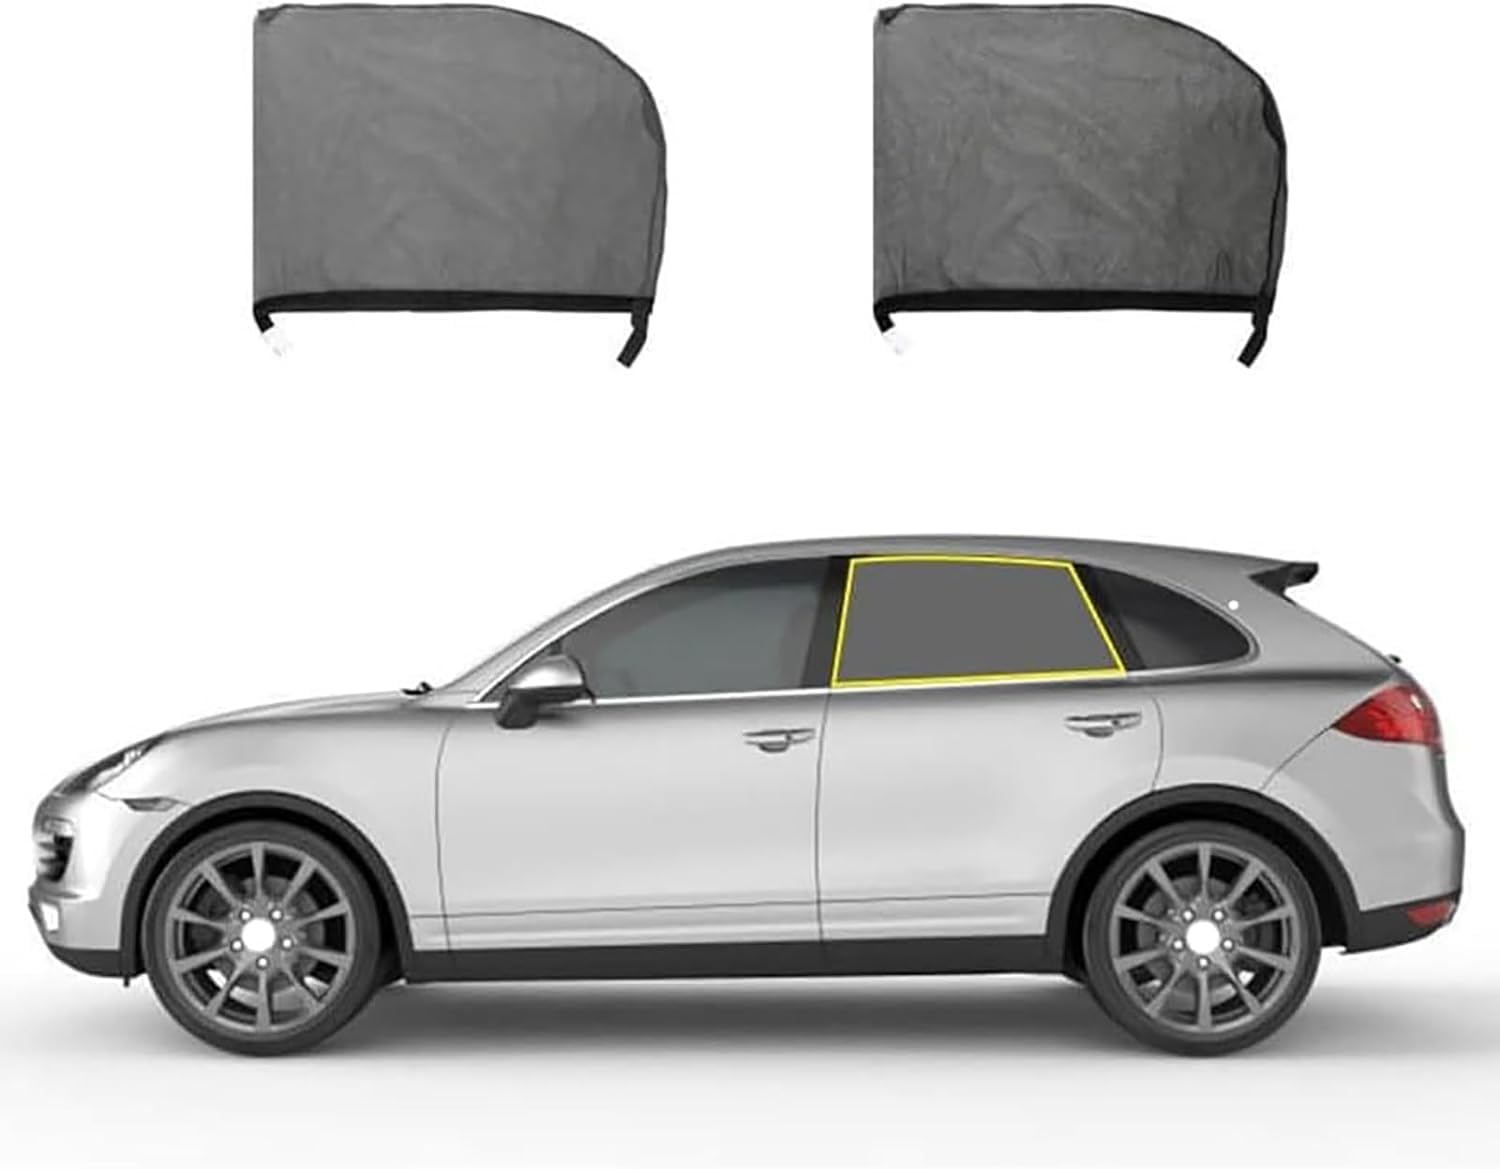 Sonnenschutz Auto Baby für Cadillac XT6 SUV 6-seat 2020 2021 2022 2023, Autofenster Sonnenschutz Vorhang Schützt Kinder & Haustiere,B/Rear-Window von LZYFCBF88